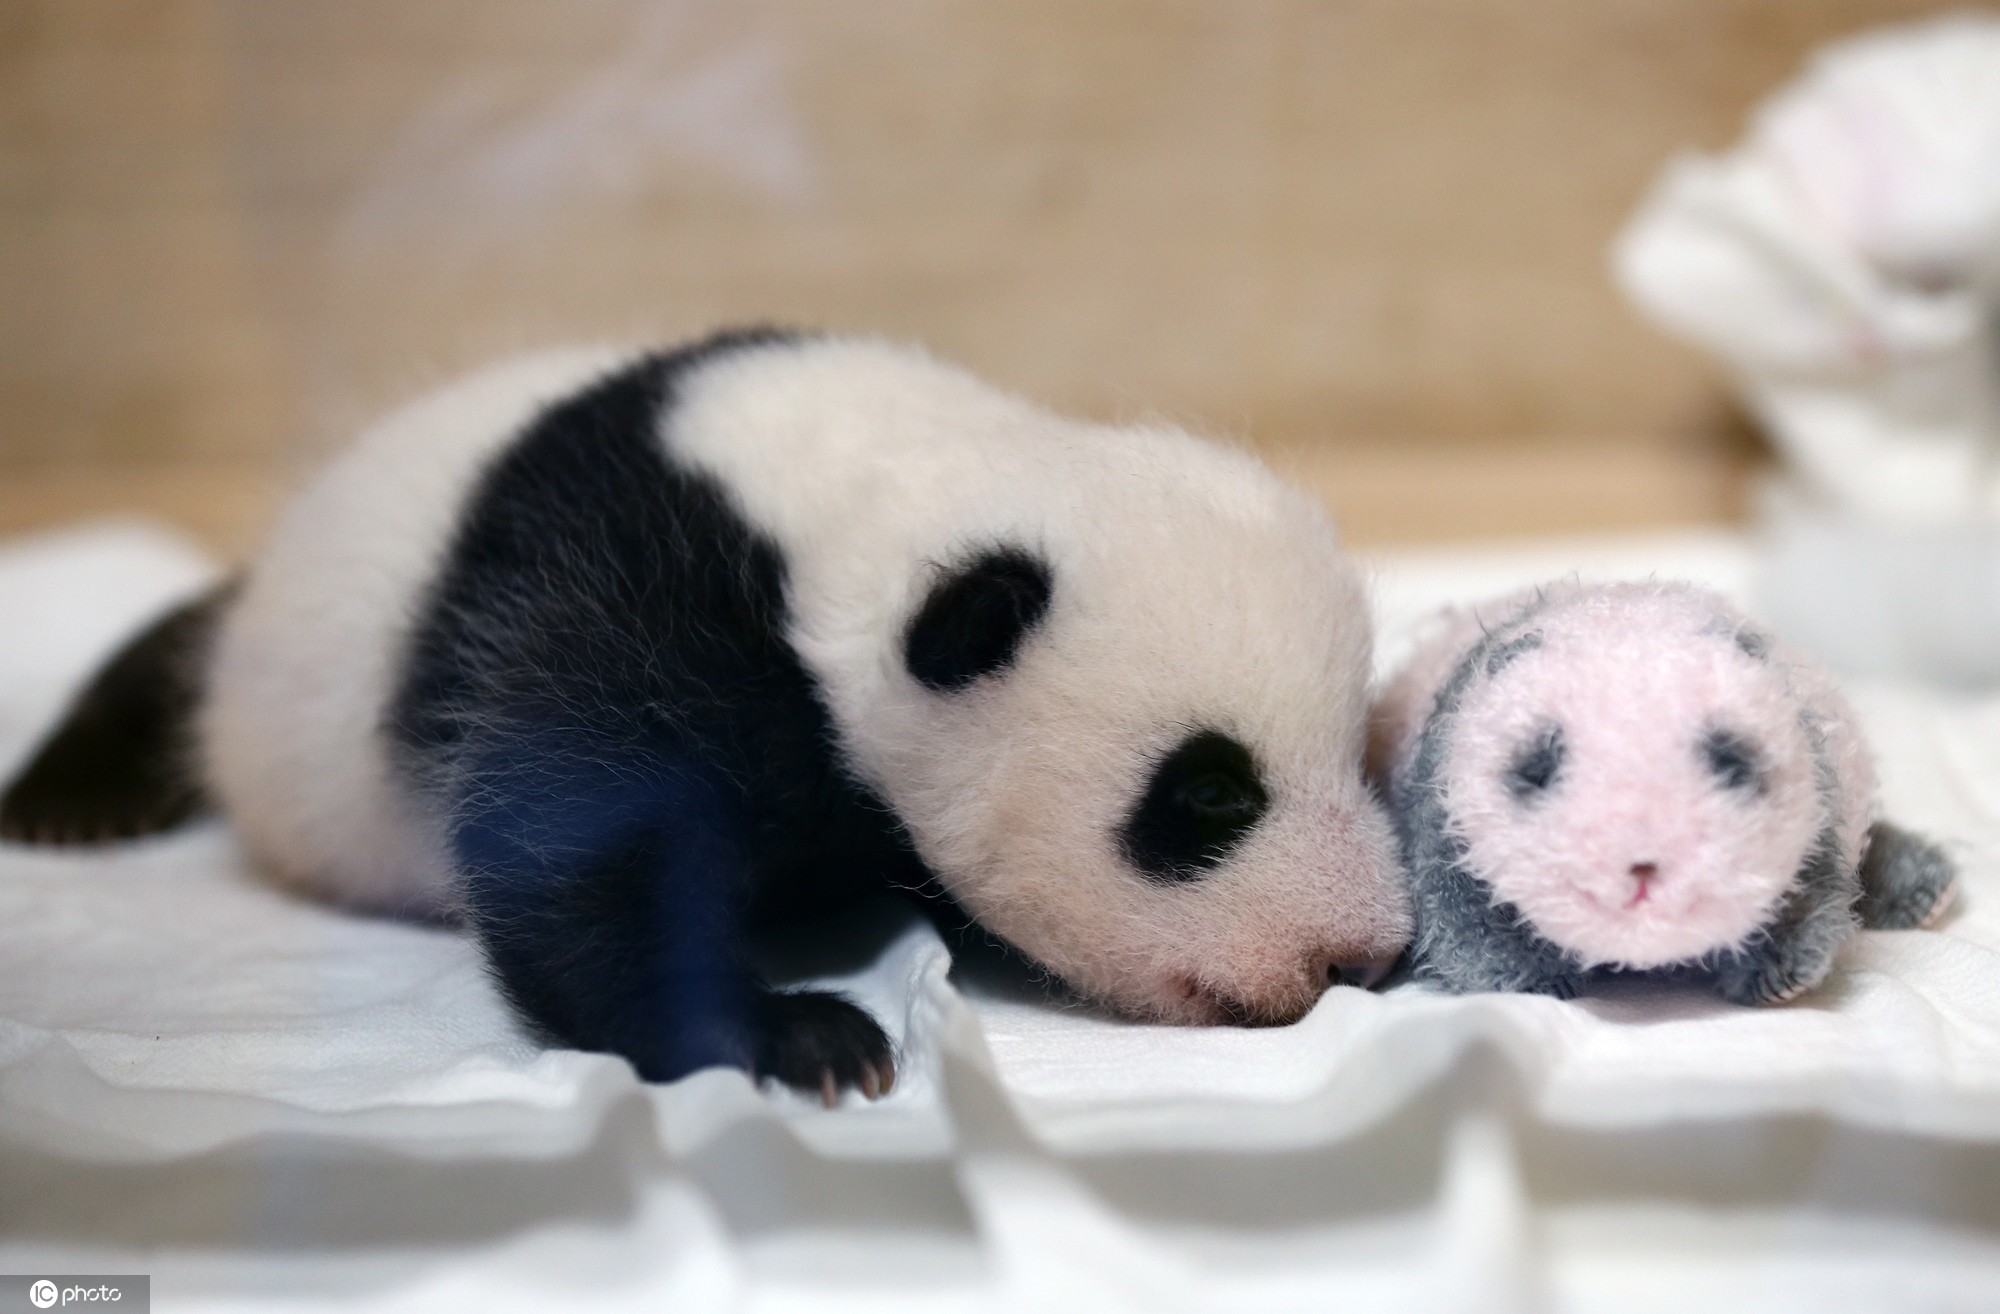 据悉,生活在爱宝乐园内的大熊猫夫妇爱宝和乐宝于当地时间7月20日